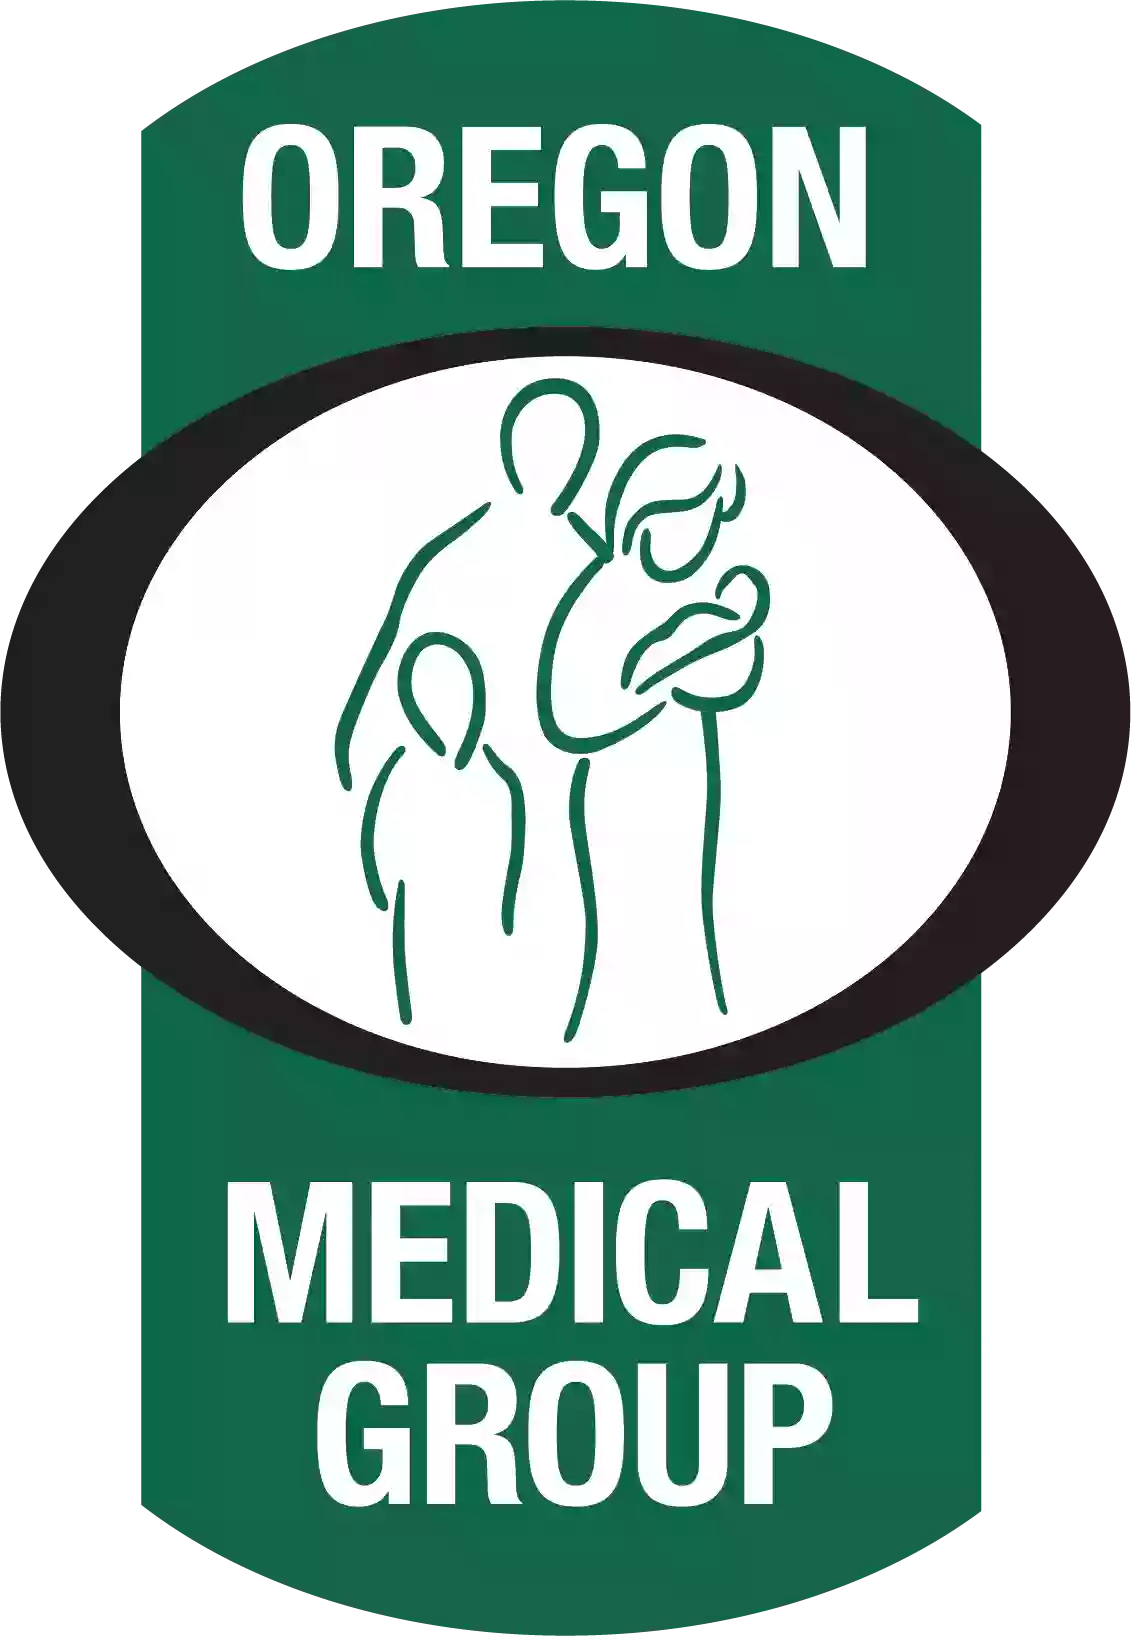 Oregon Medical Group - Garden Way Medical Clinic